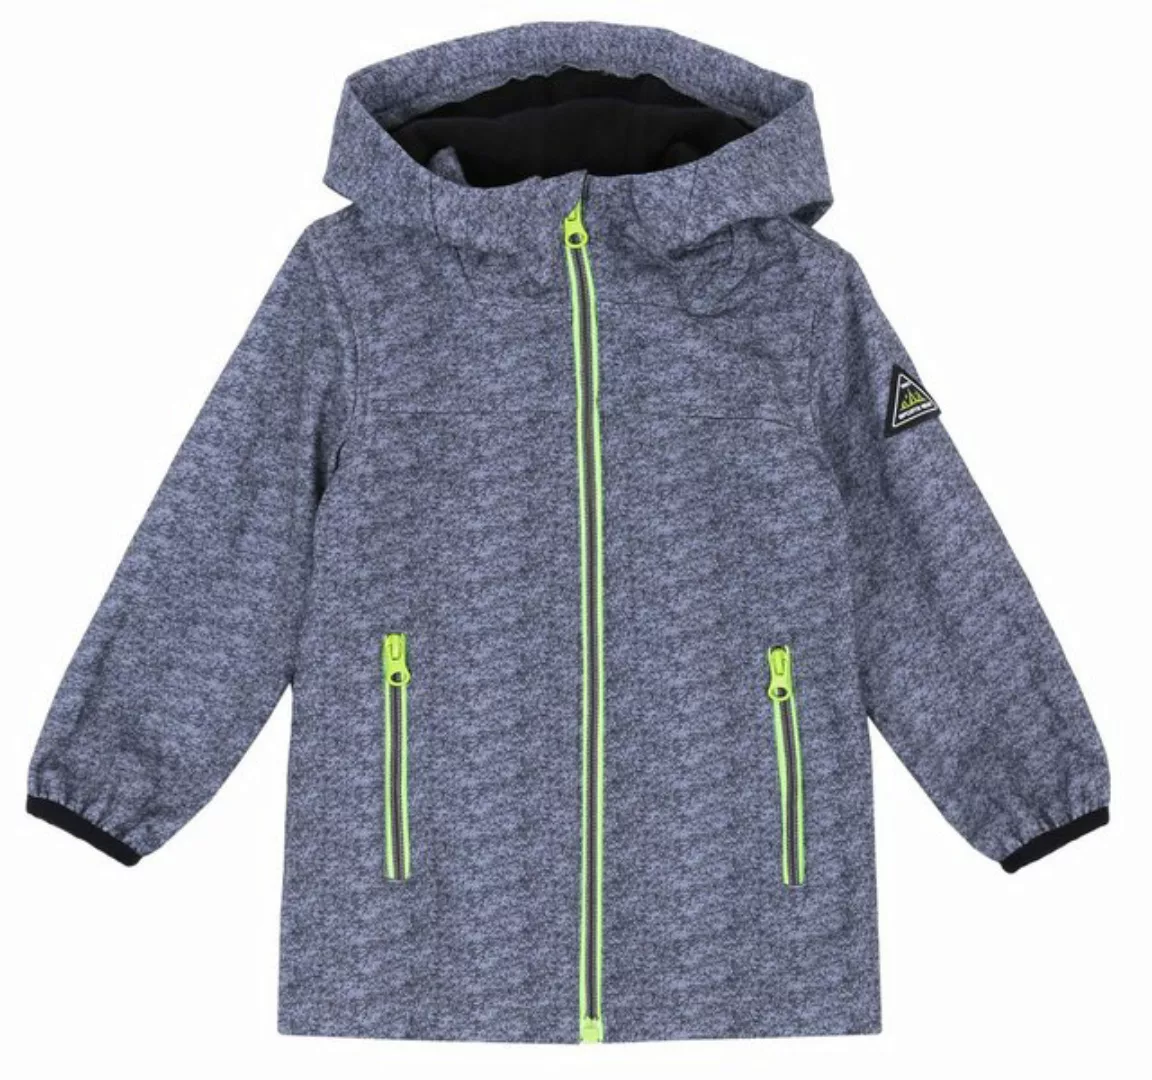 Sarcia.eu Sakko mit Kapuze Graue Jacke mit neonfarbenen Details 12-18 Monat günstig online kaufen